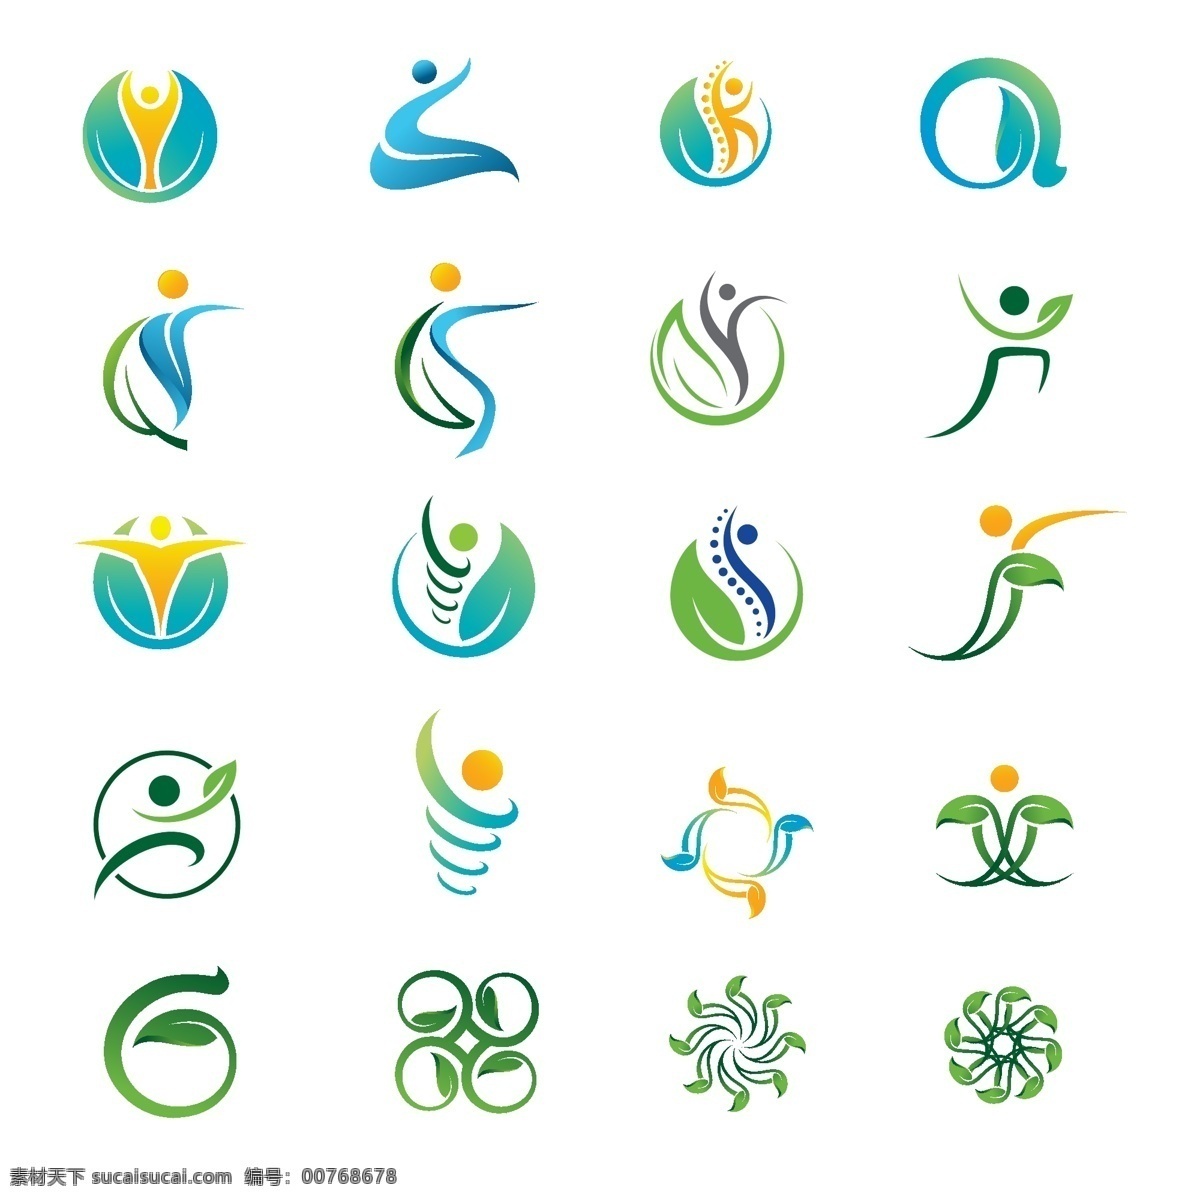 环保logo 矢量素材 圆形logo 绿色logo 农业logo 大树logo logo设计